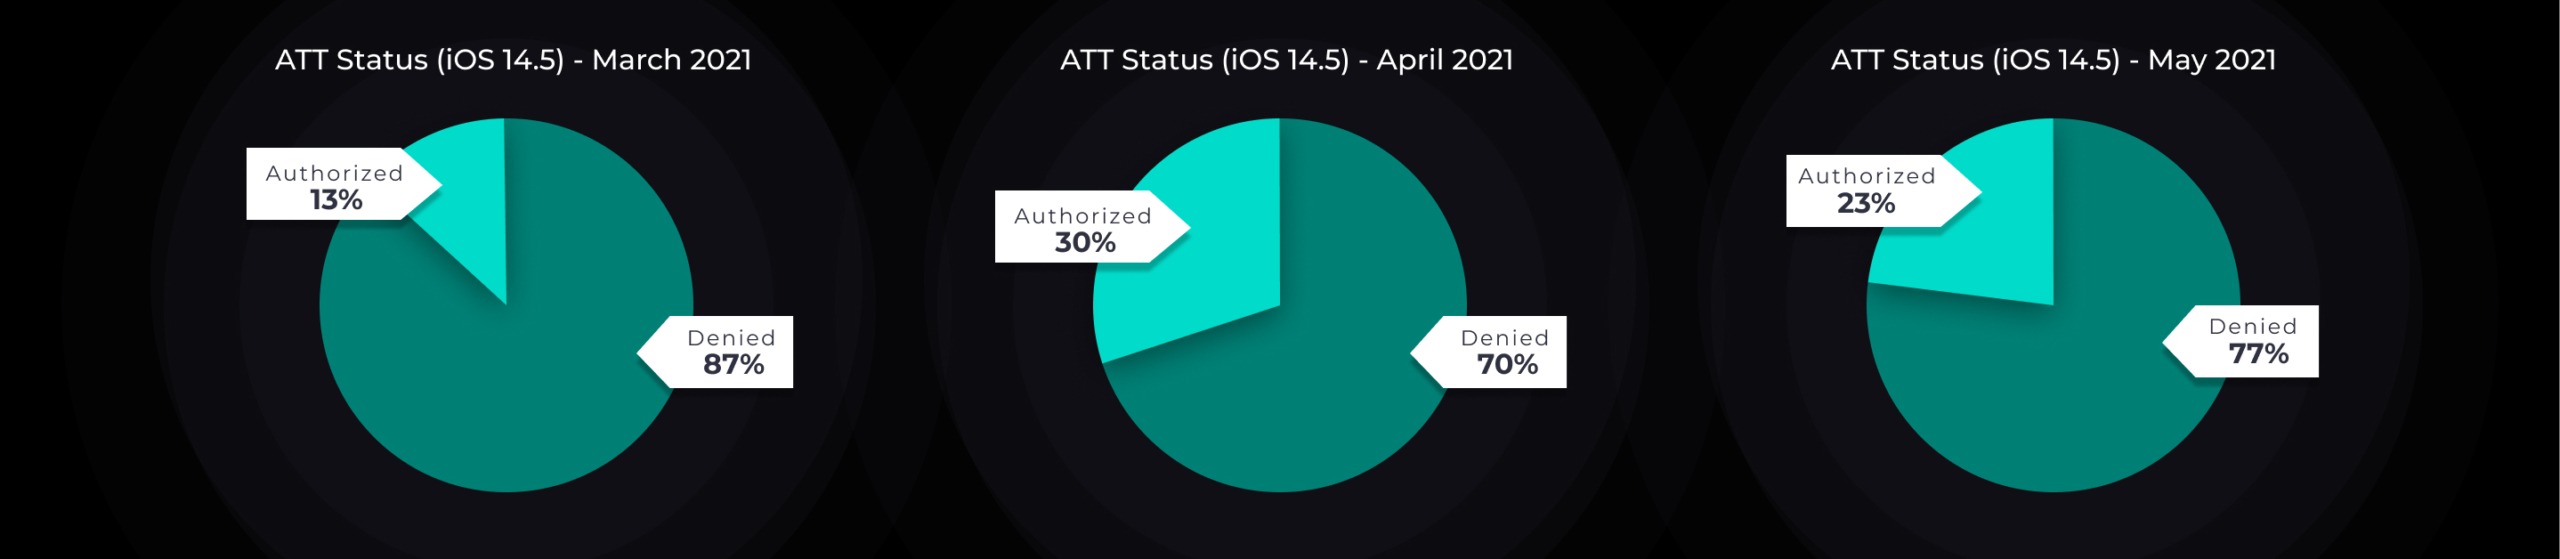 ATT Status - May 2021